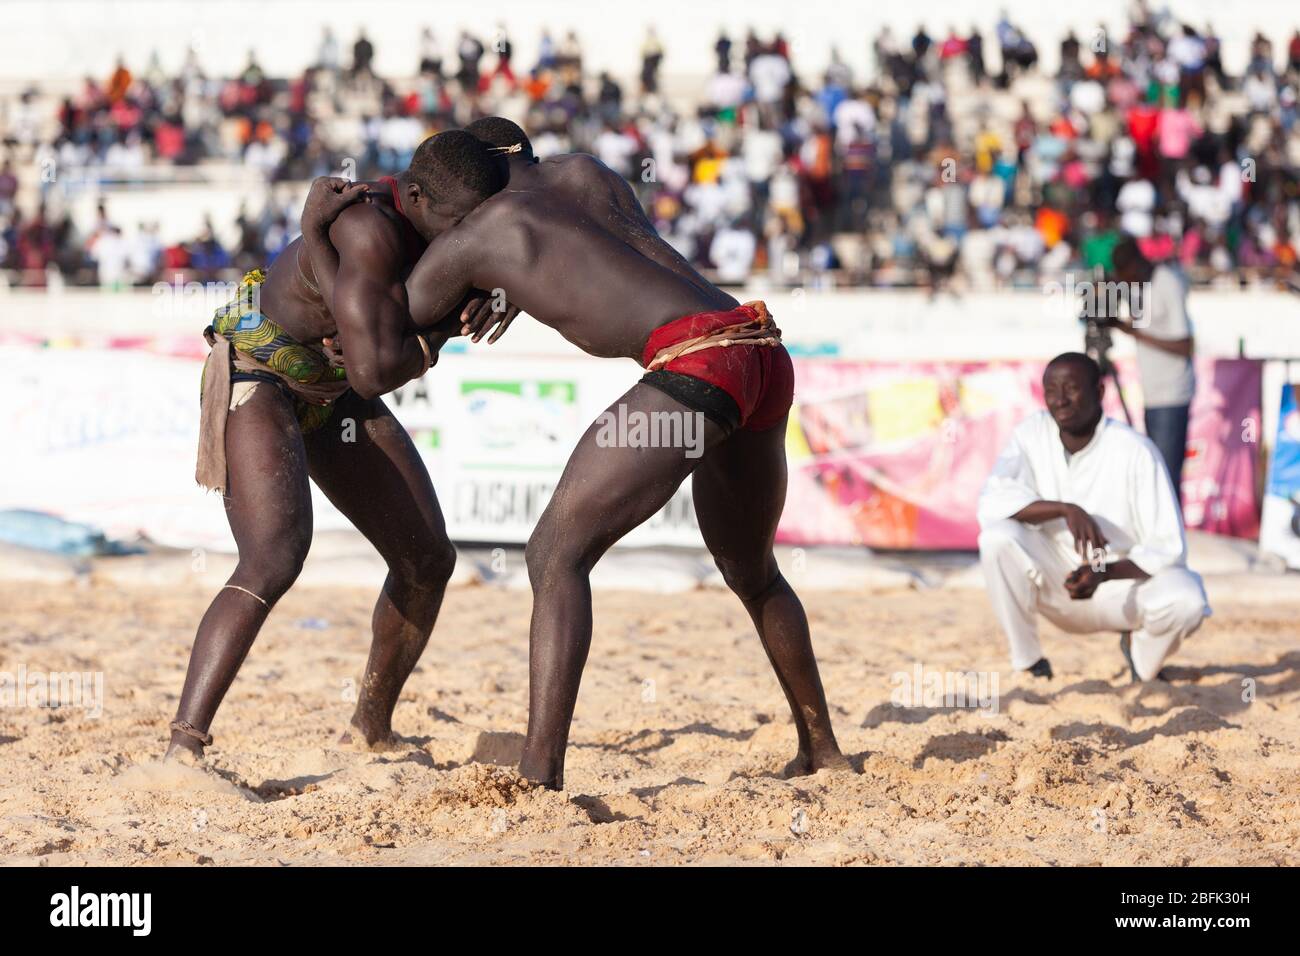 Un moment de blocage lors d'un match de lutte à Dakar, au Sénégal. Banque D'Images